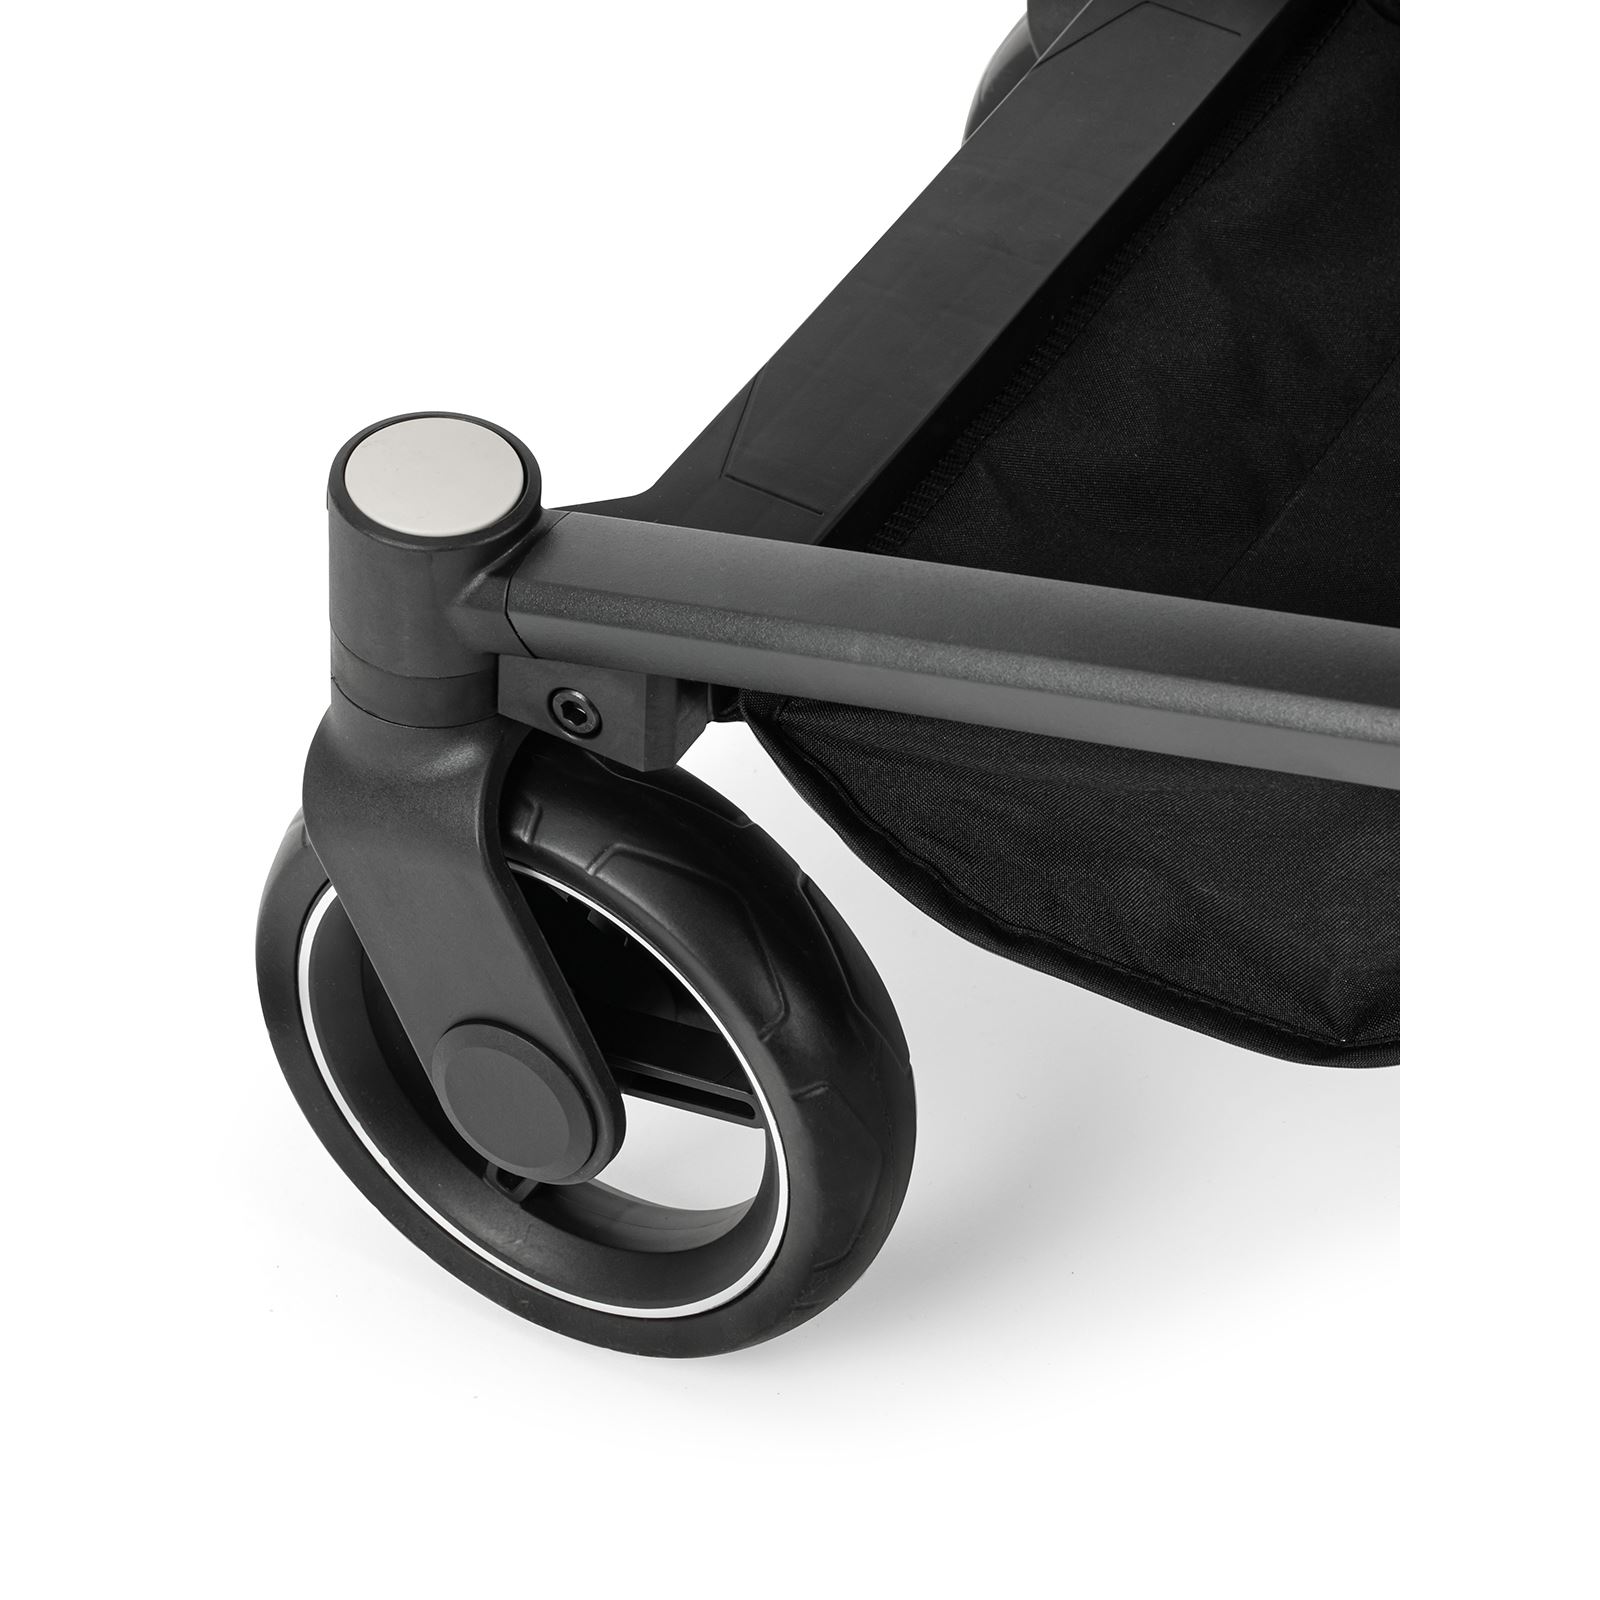 Kanz T-Go Travel Sistem Bebek Arabası Siyah